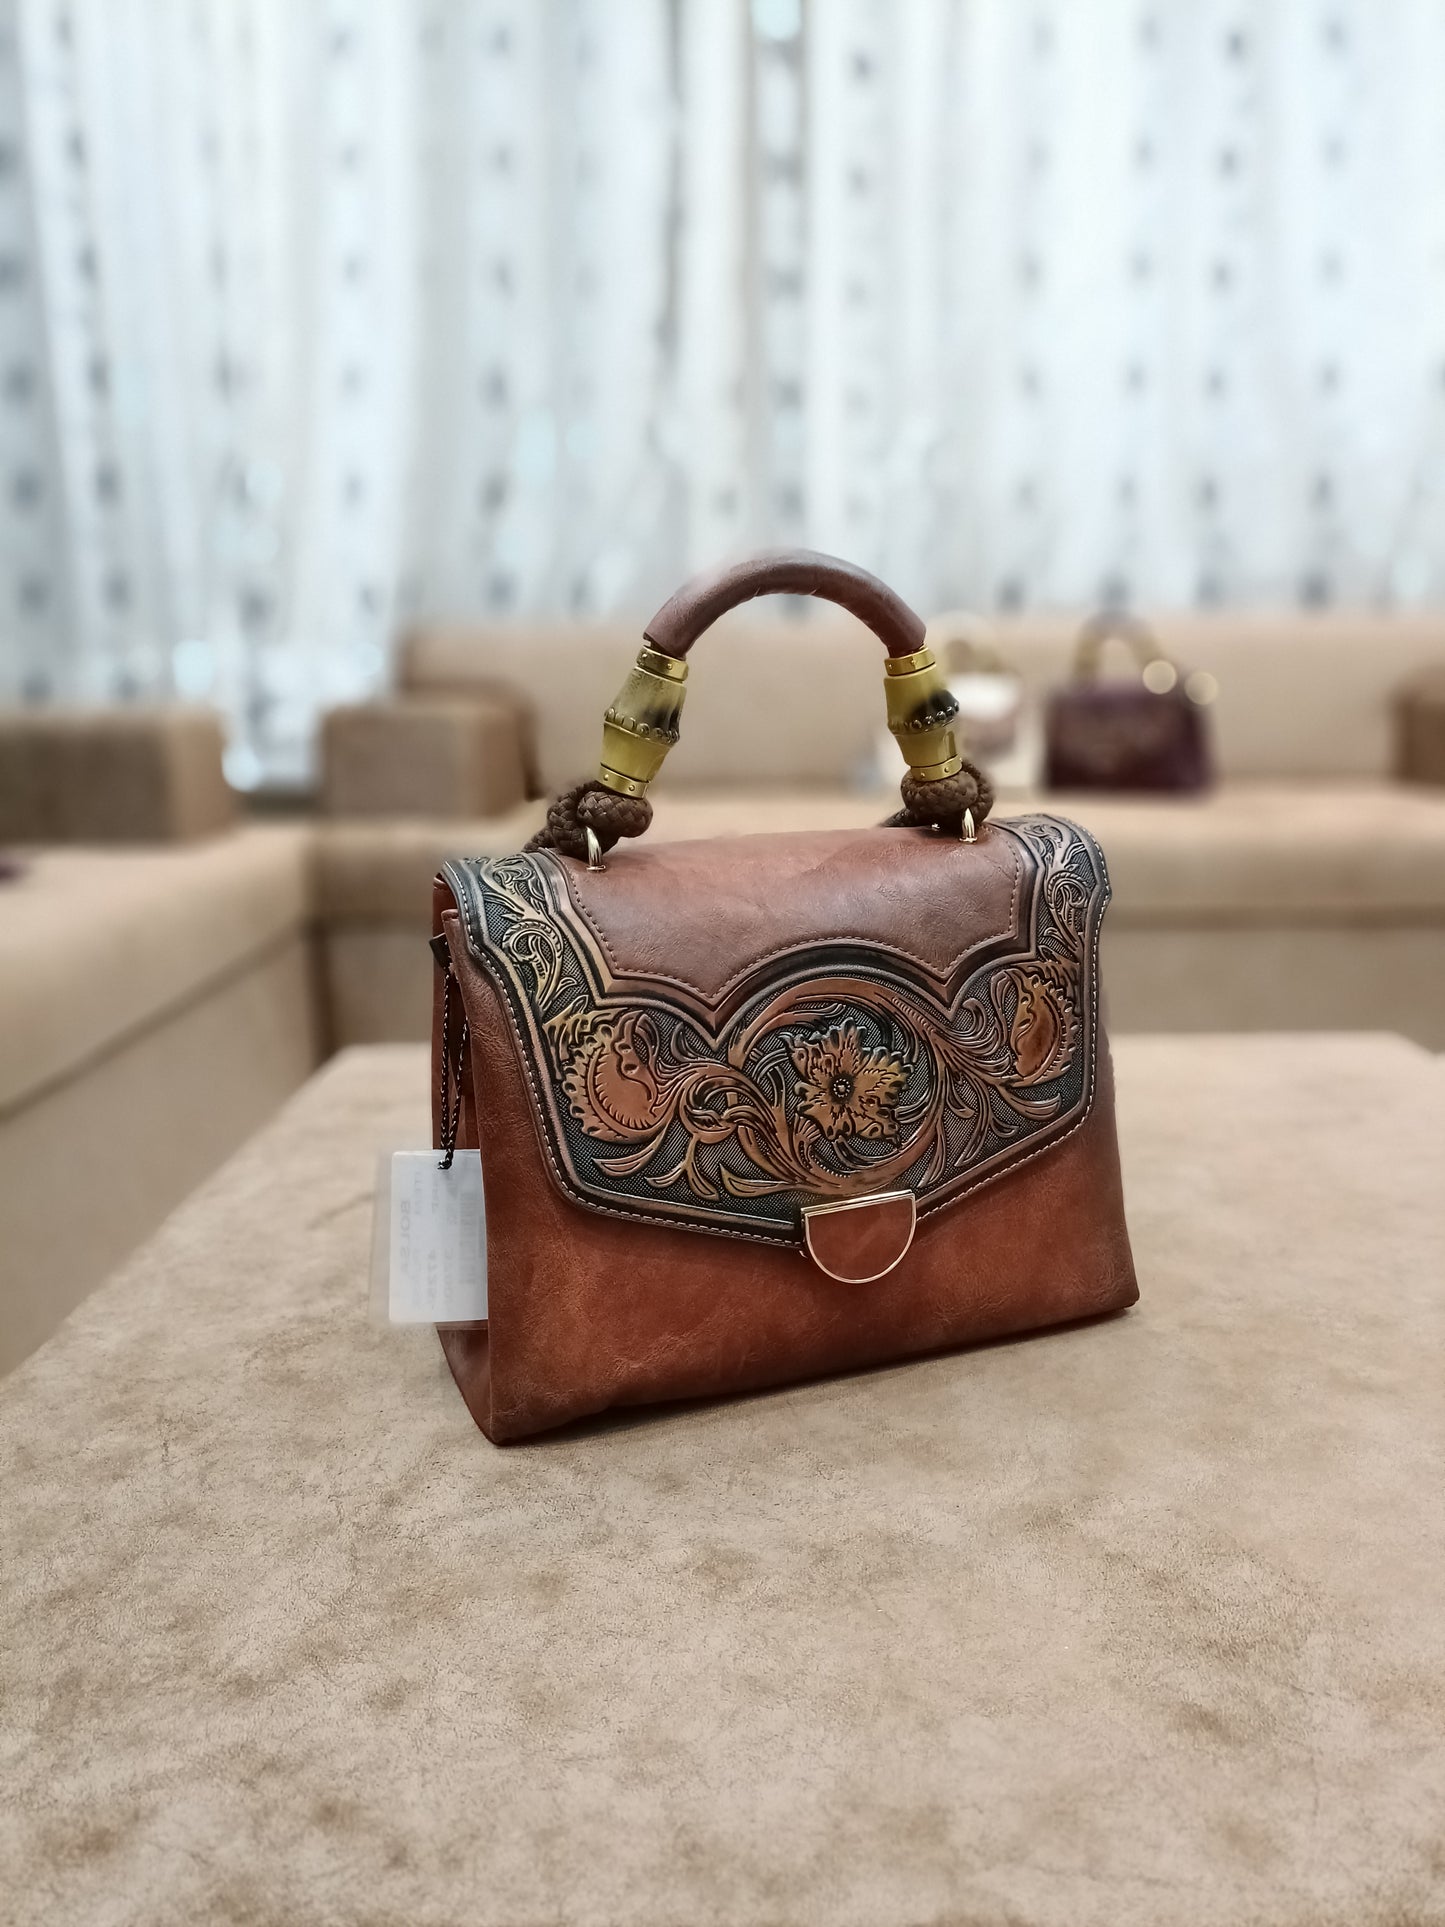 Premium Party wear | Bridal handbag